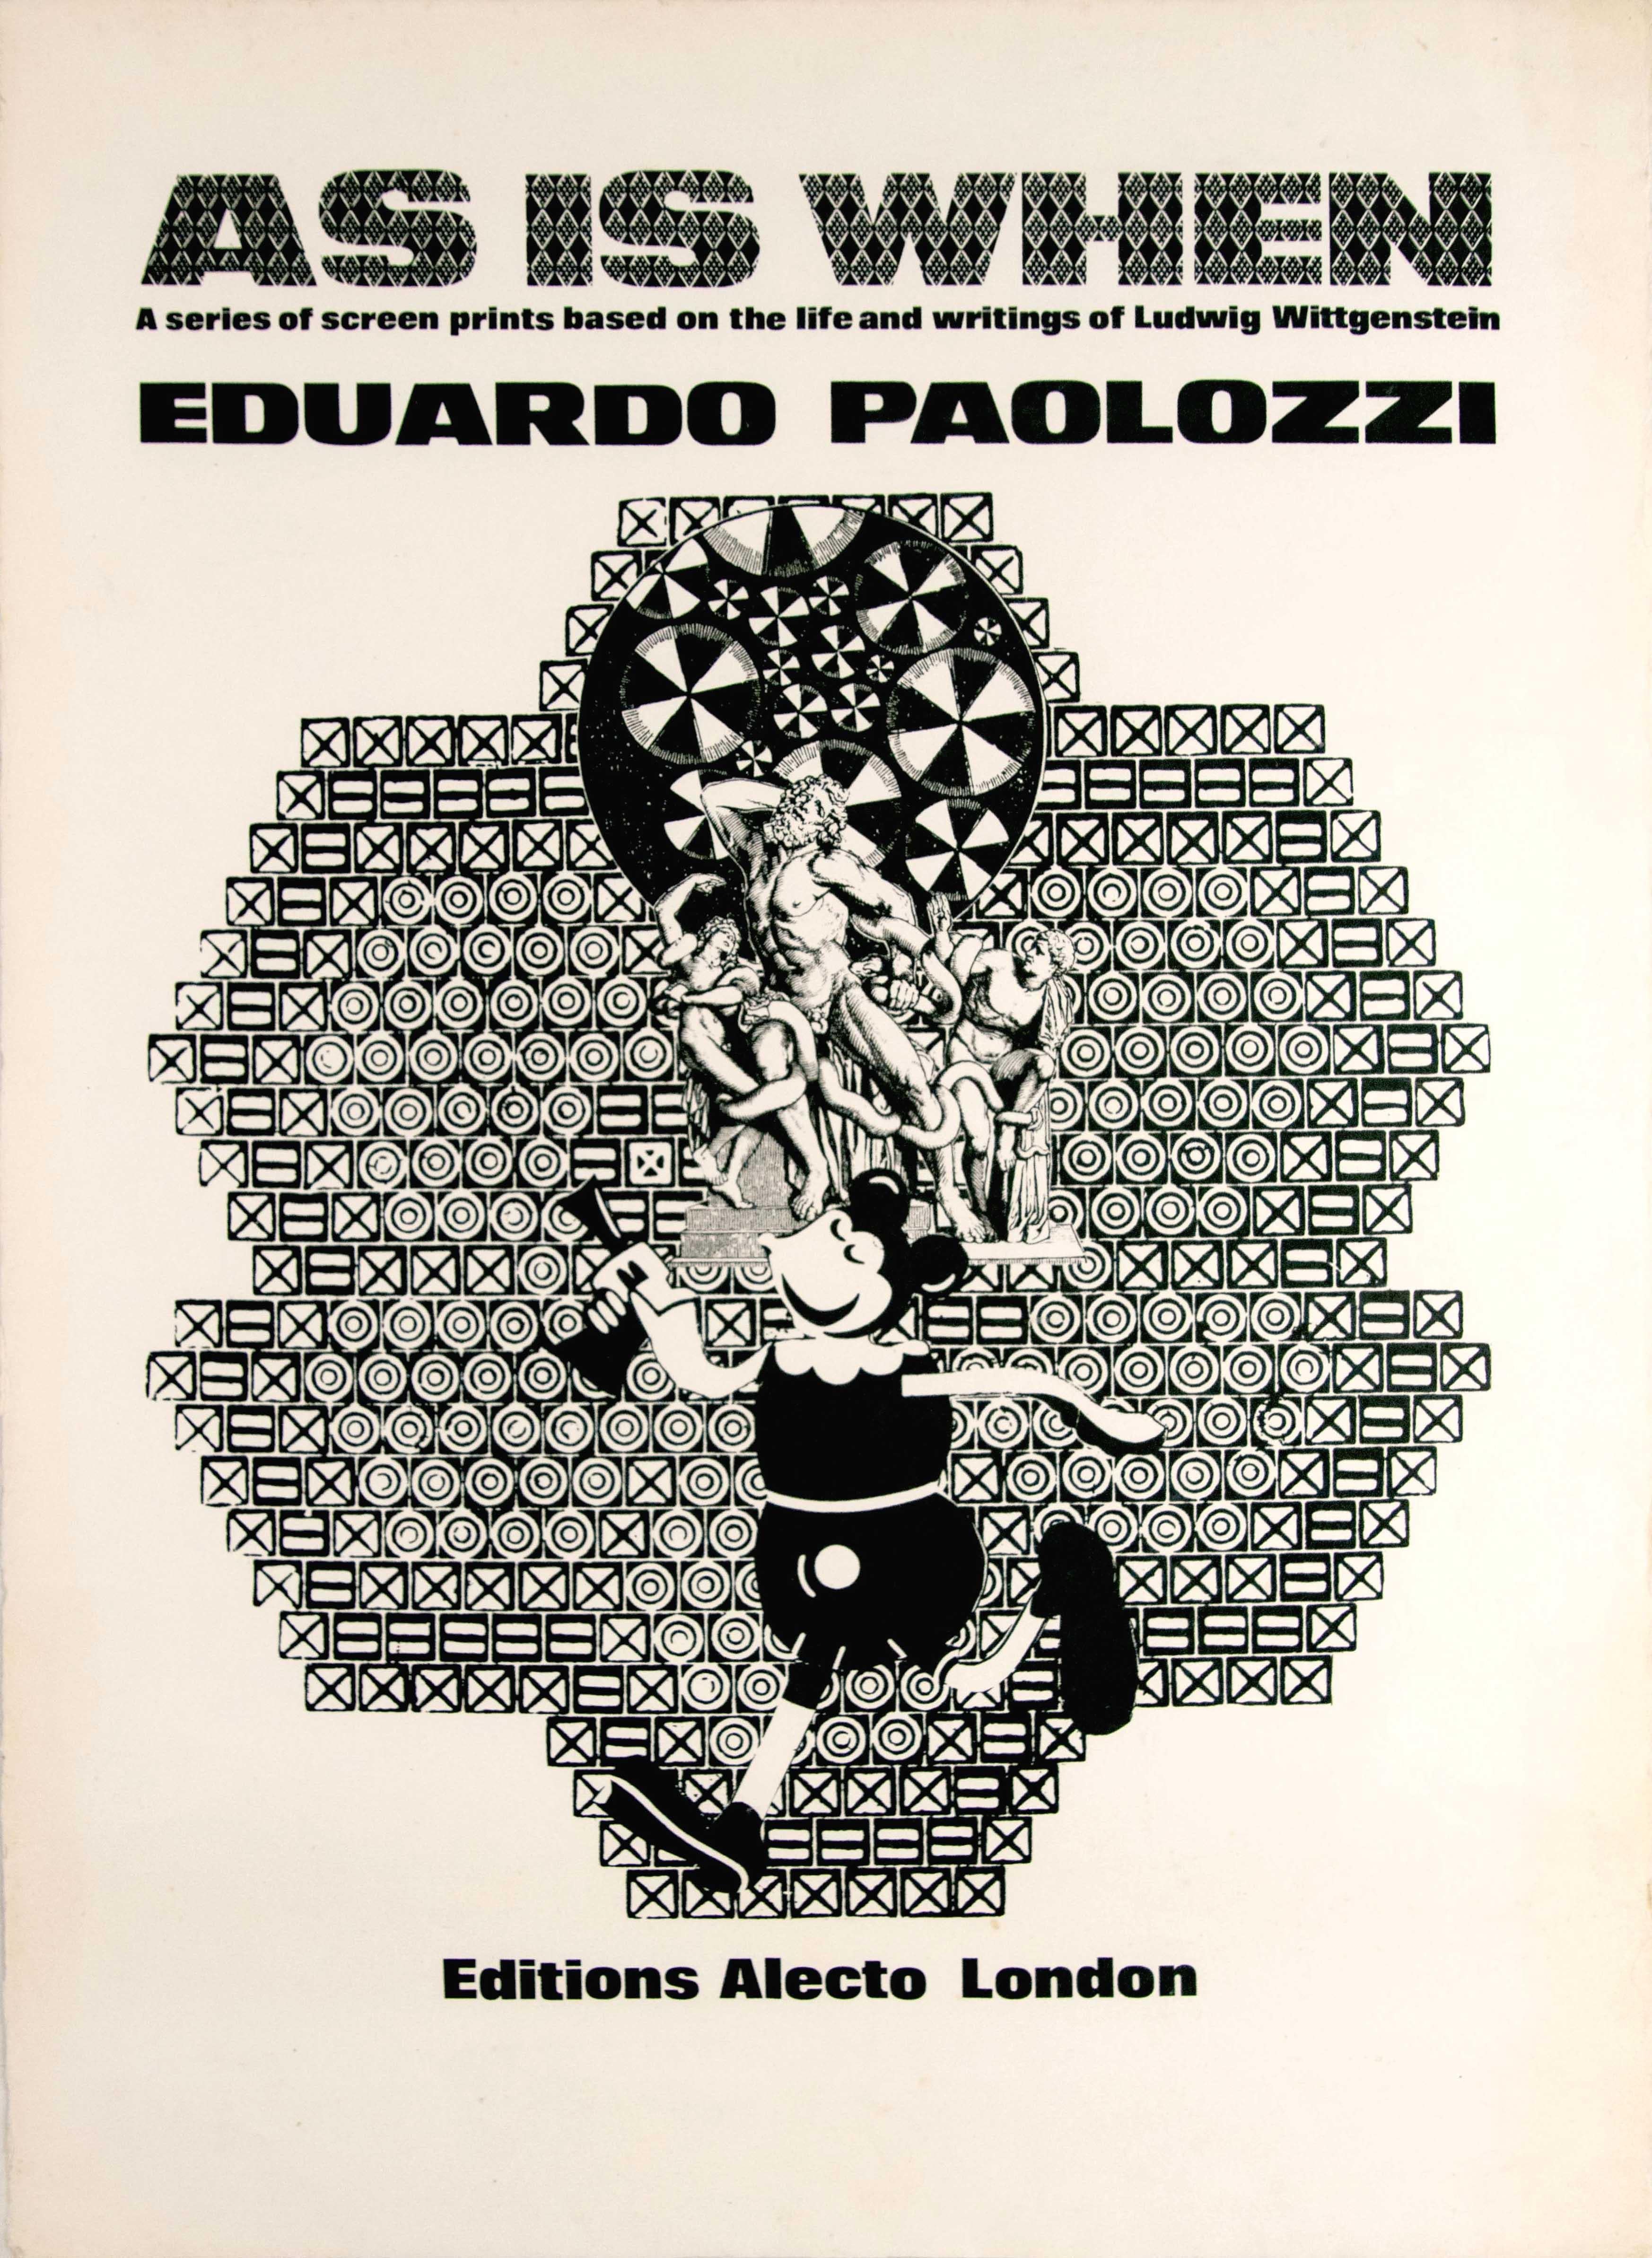 Eduardo Paolozzi Print - Original Vintage Poster As Is When Paolozzi Art Exhibition Ludwig Wittgenstein